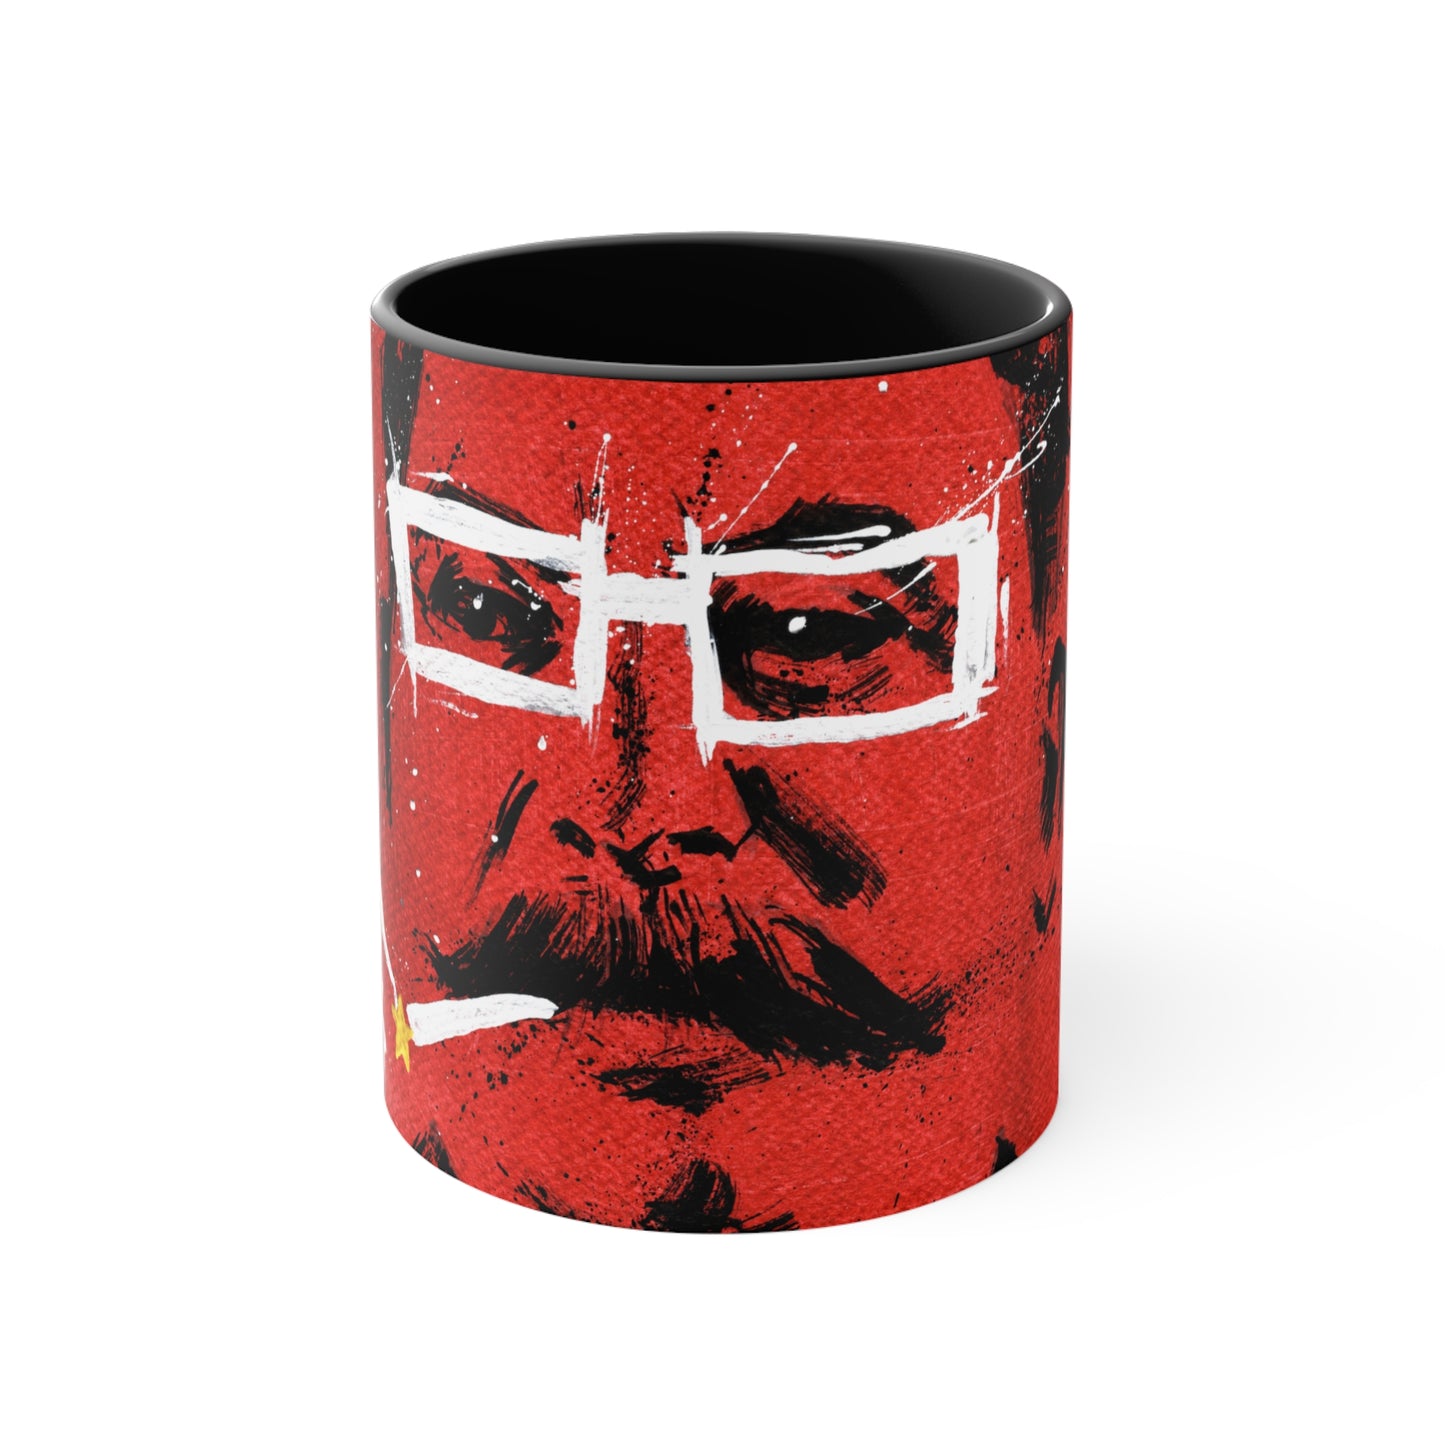 Coffee Mug: Smokin' Stalin